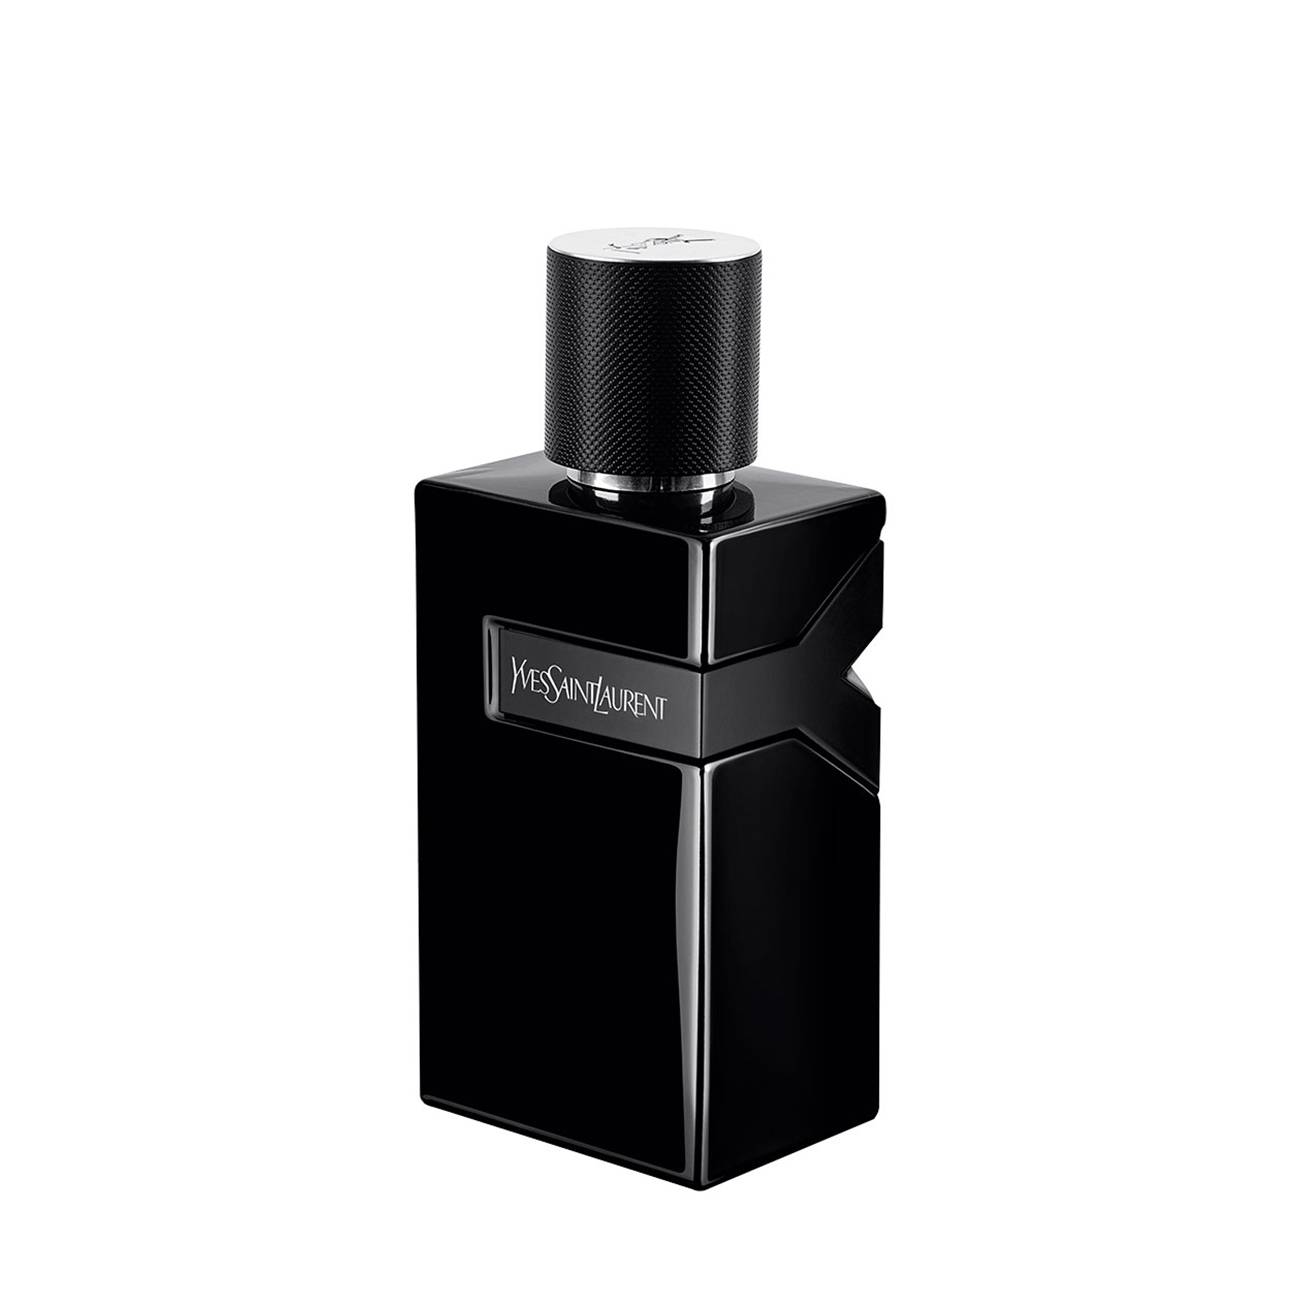 Y Le Parfum 100 ml Yves Saint Laurent bestvalue.eu imagine noua